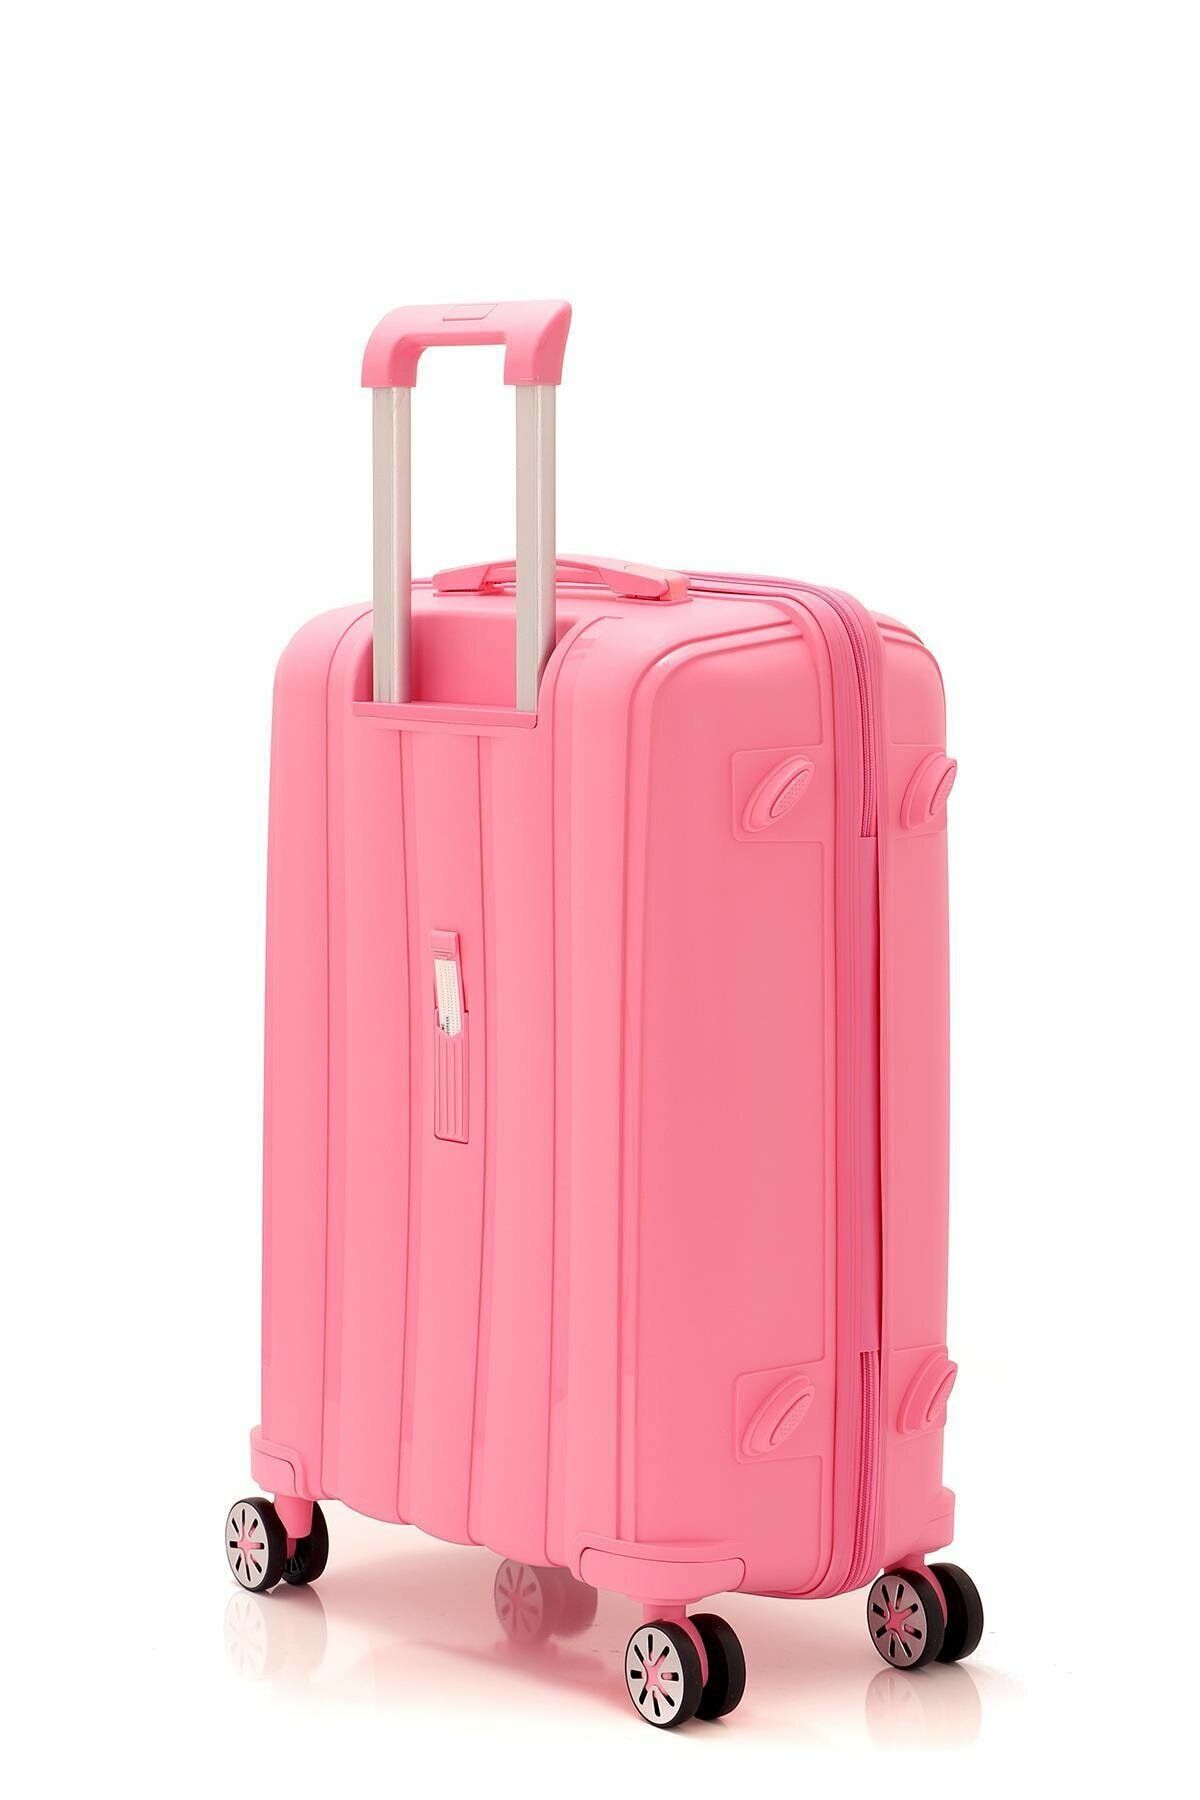 Маленький чемодан для ручьной клади из полипропилена MCS V305 S PINK! Для 8-10 кг! - 4